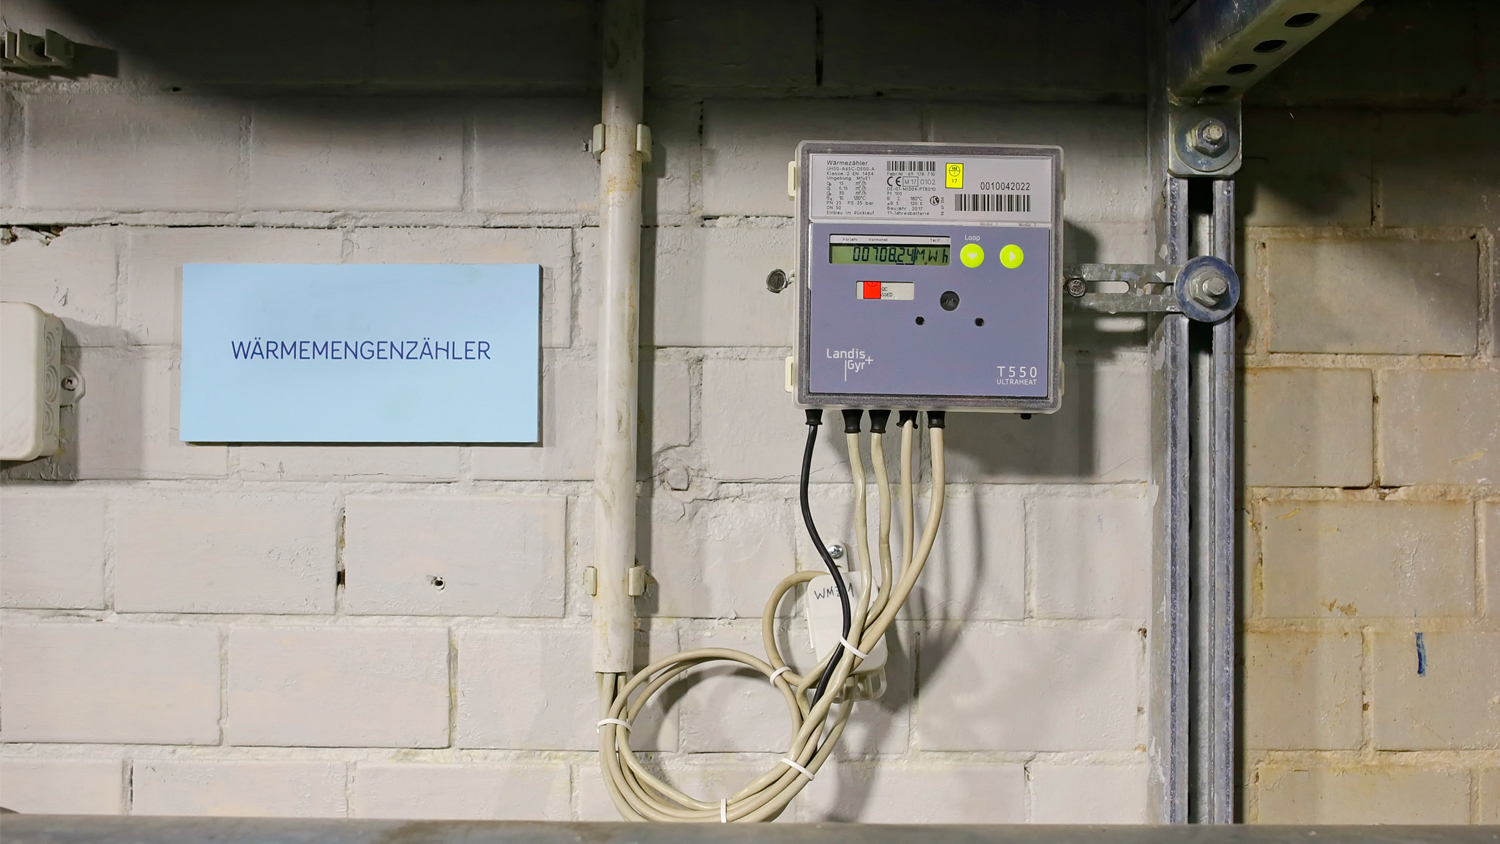 caption=Installationen av en smart fjärrvärmemätare i pannrummet vid Rotes Rathaus (Röda rådhuset) i Berlin – medieevenemang den 23 januari 2018. Foto: Pedro Becerra